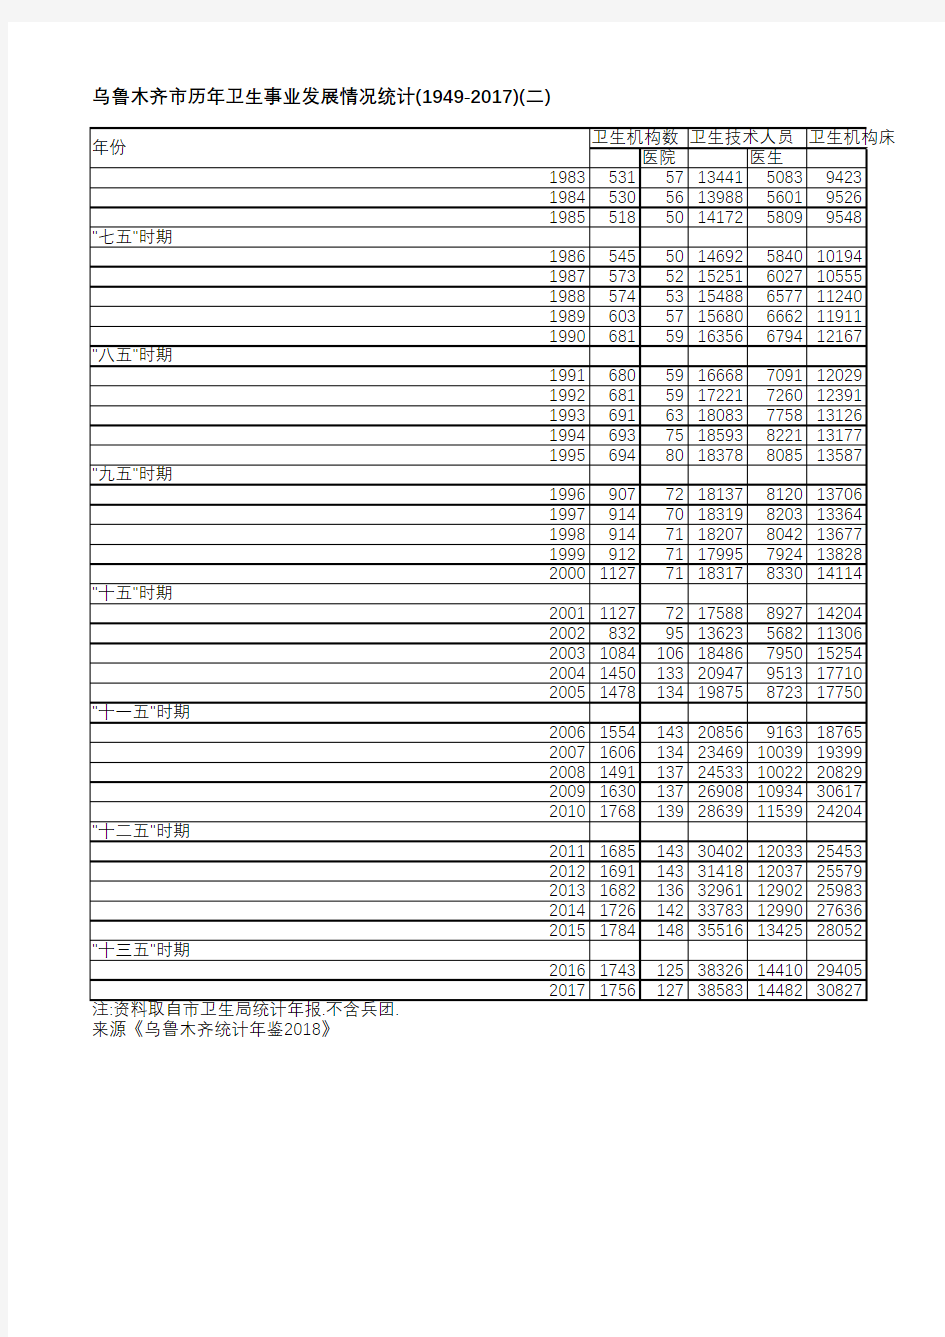 乌鲁木齐统计年鉴2018-乌鲁木齐市历年卫生事业发展情况统计(1949-2017)(二)